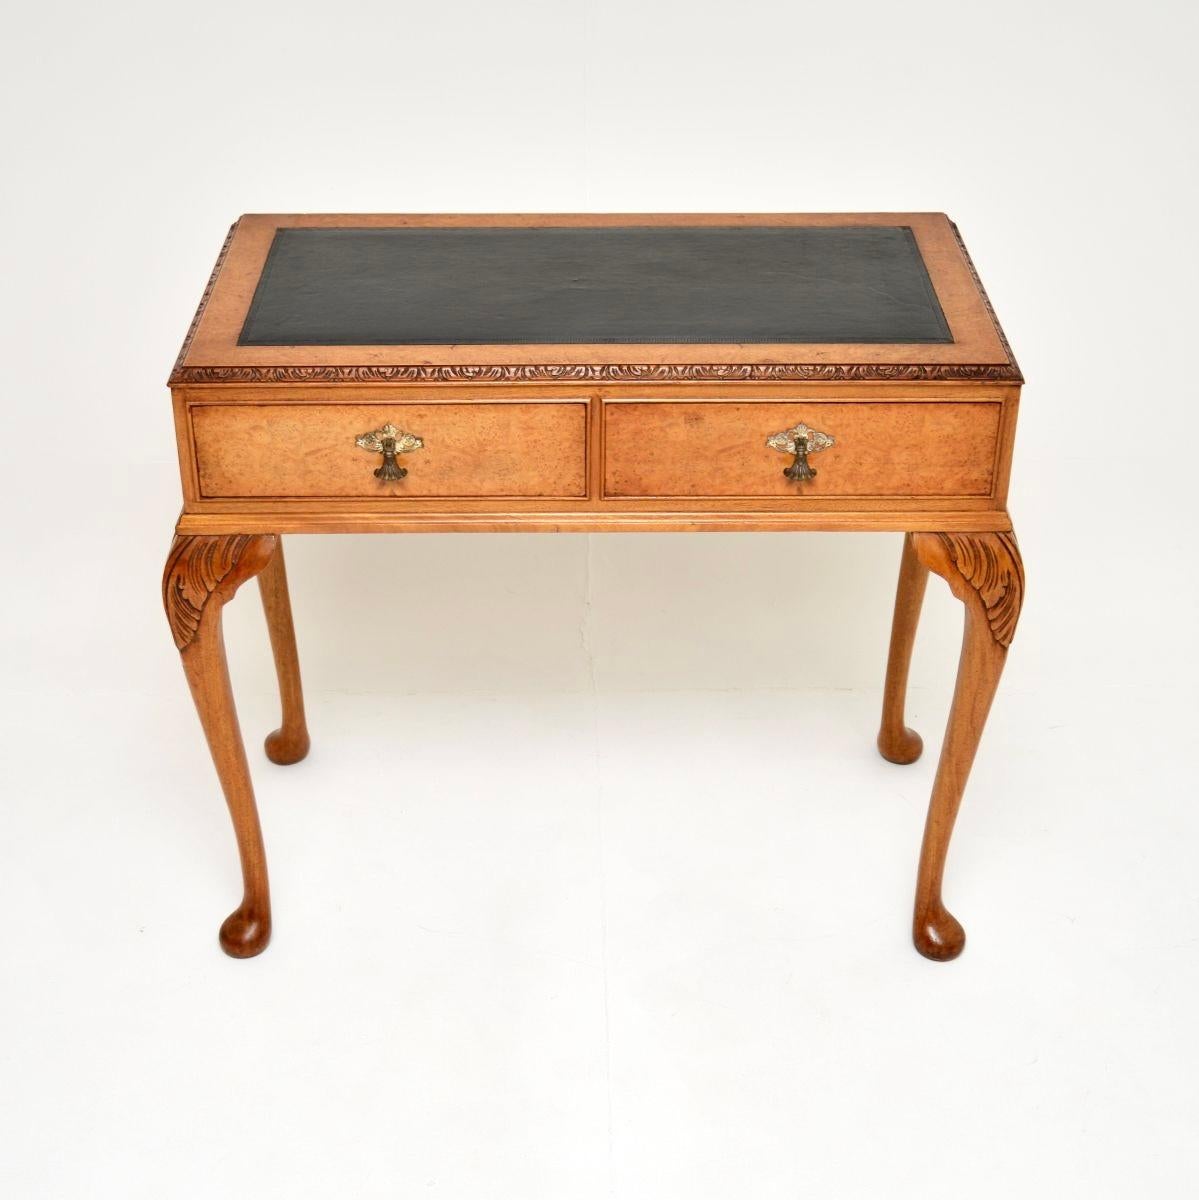 Ein eleganter und sehr gut gemachter antiker Schreibtisch mit Lederplatte aus Wurzelnussholz. Es wurde in England hergestellt und stammt etwa aus den 1930er Jahren.

Die Qualität ist hervorragend, die Größe ist schön kompakt. Es gibt einen Einsatz